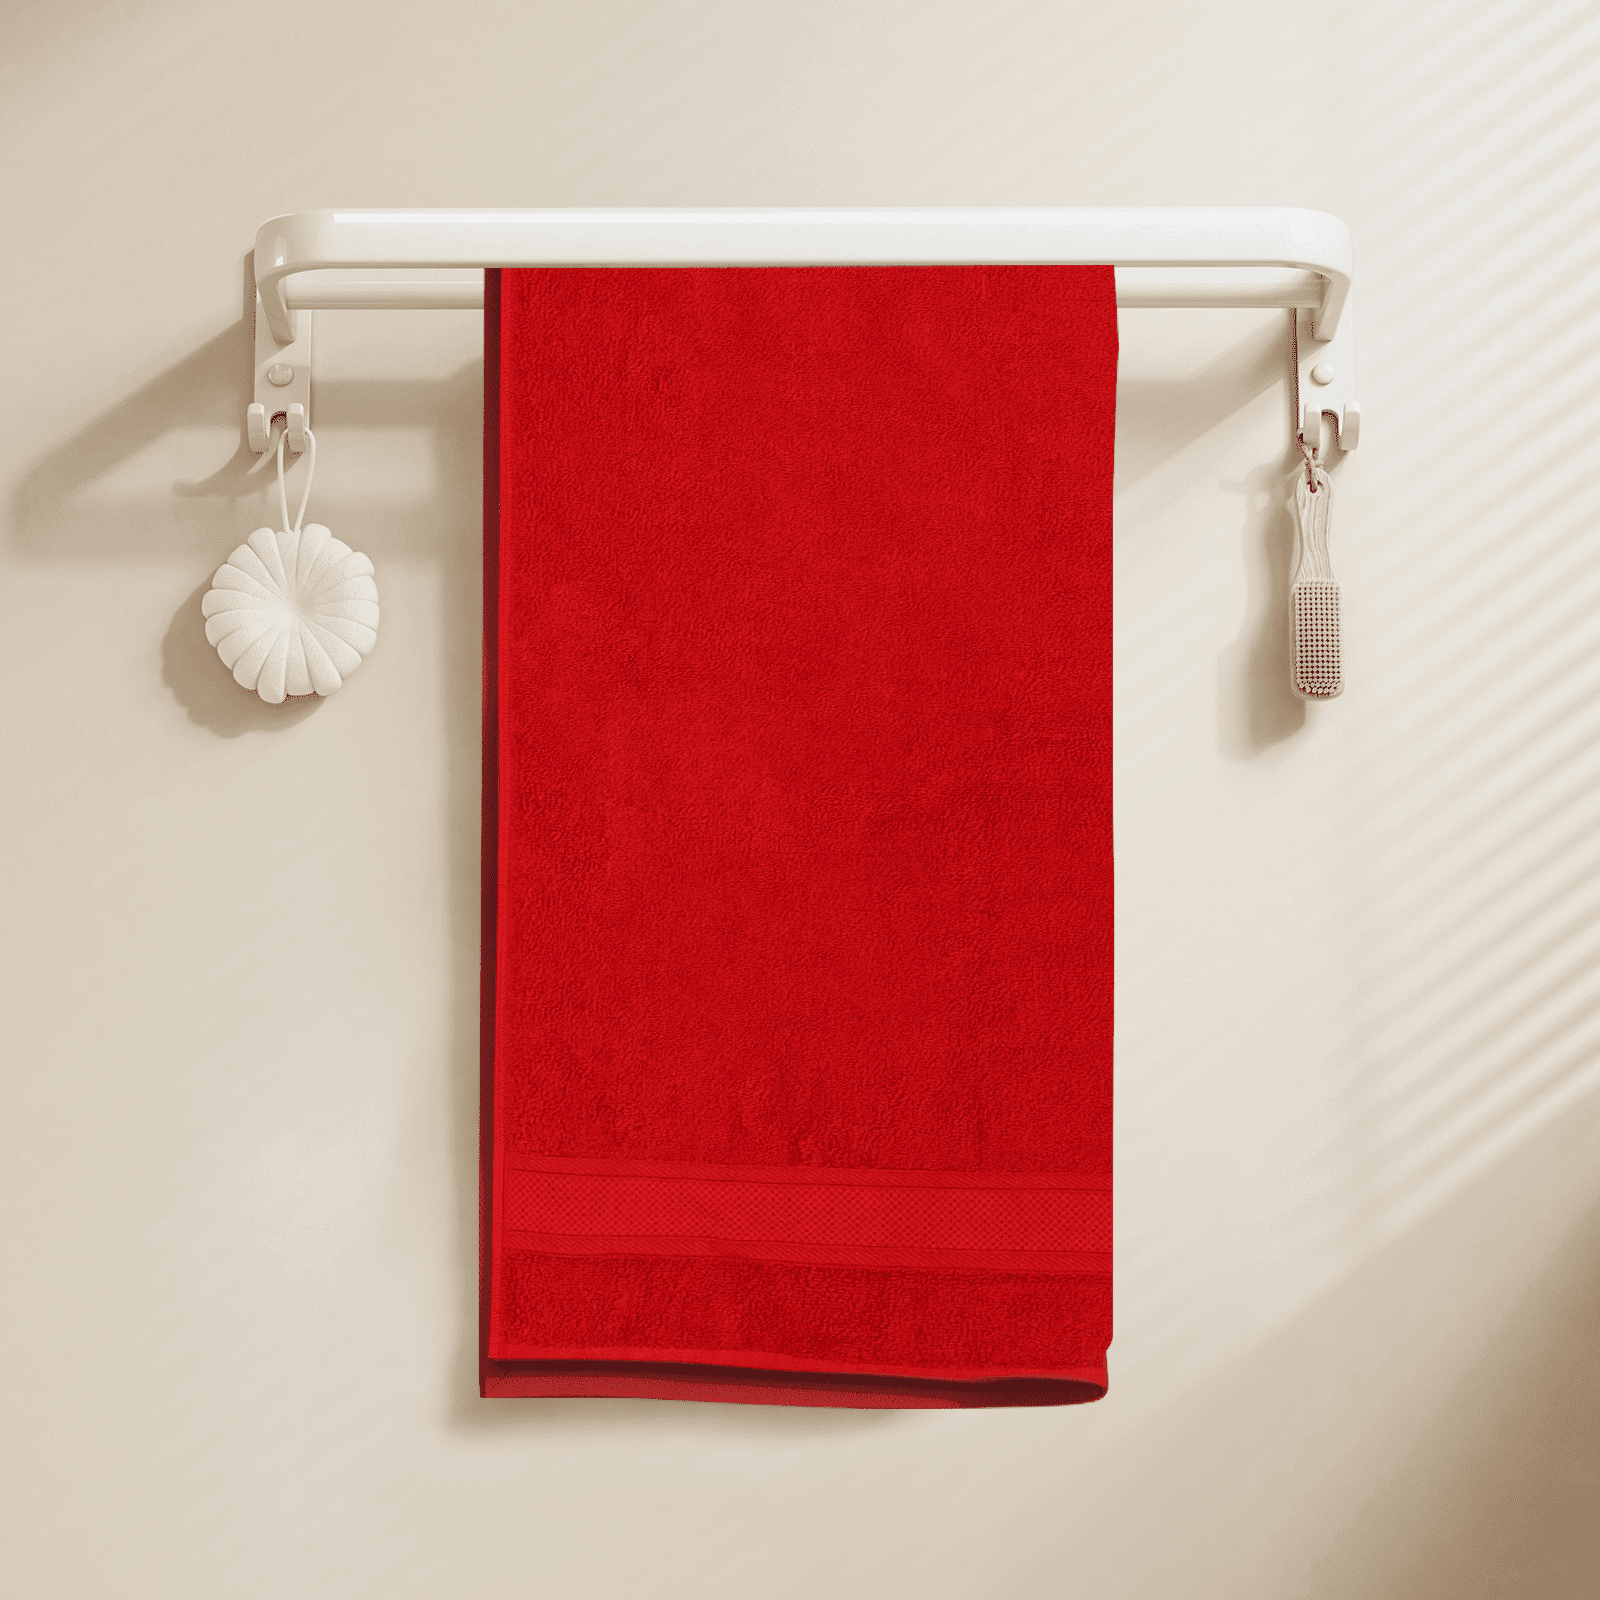  Luxury Bath Towels Extra Large Fluffy — Set of 2 Plush